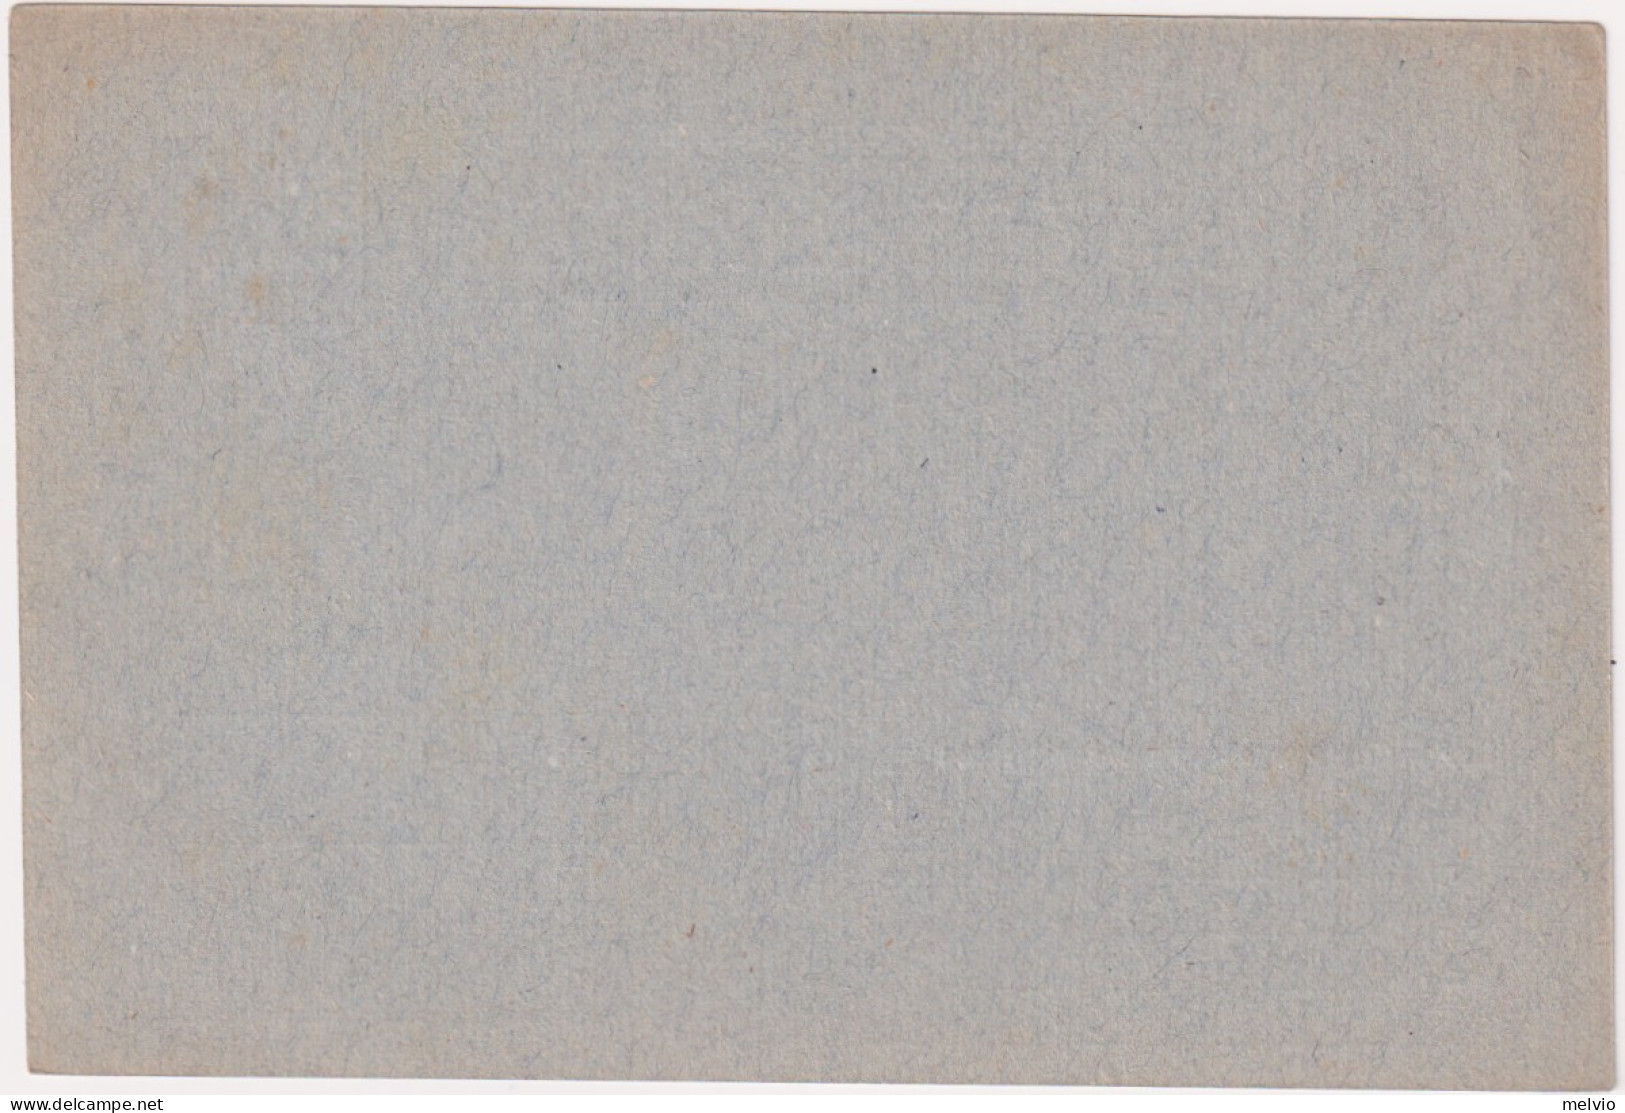 1945-Provvisoria Cartolina Postale Per Le Forze Armate Cartiglio Grande Centrato - Ganzsachen